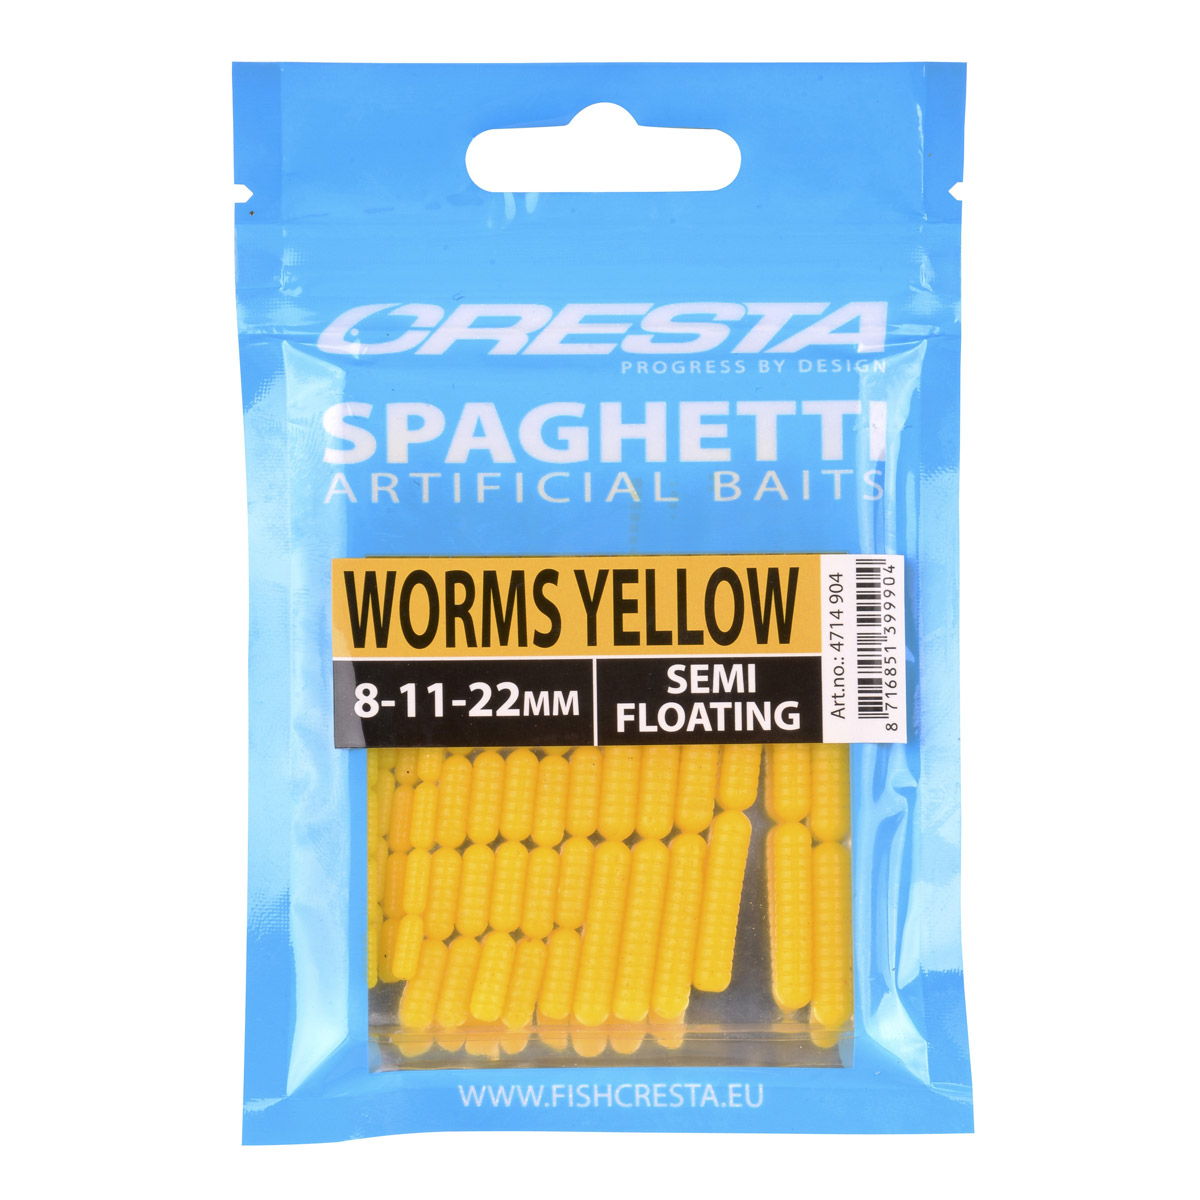 Spro Cresta Spaghetti Worms